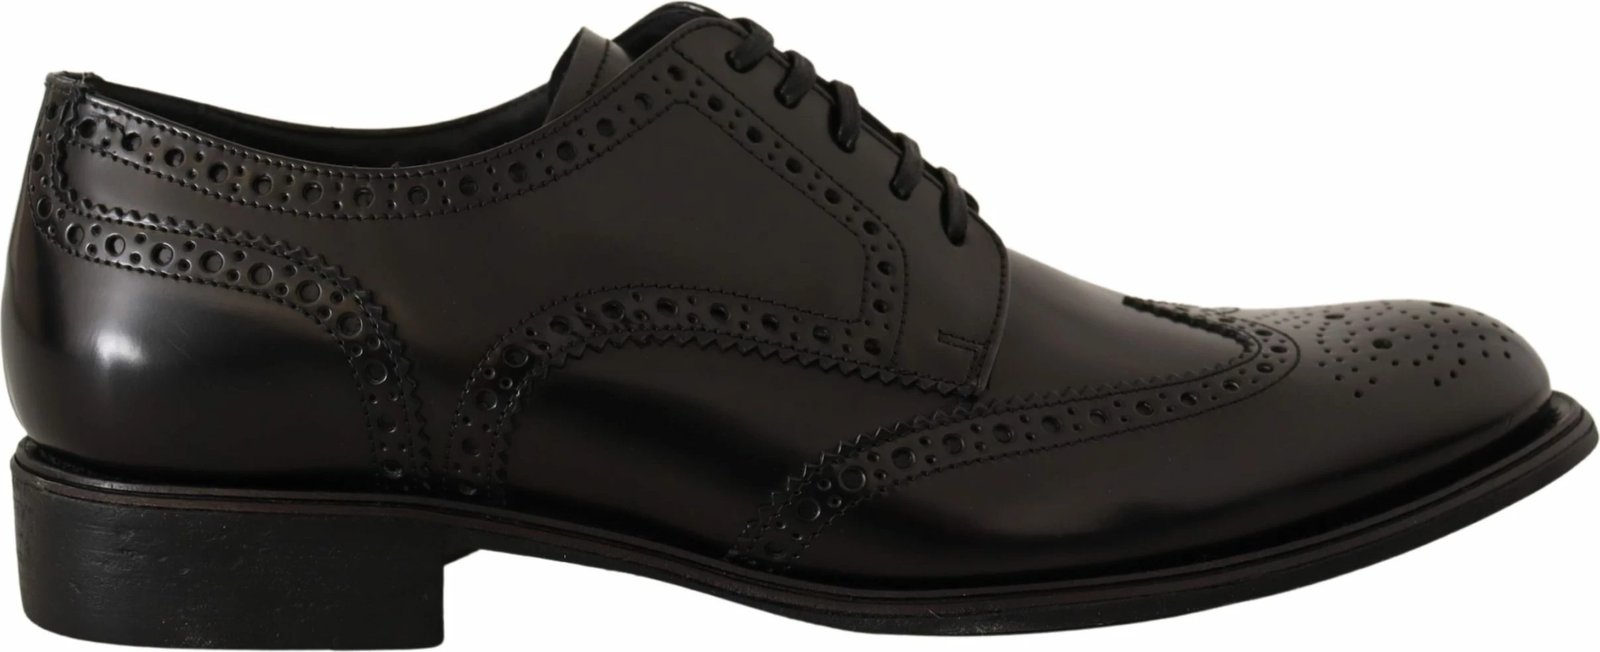 Këpucë për meshkuj Dolce & Gabbana, të zeza 